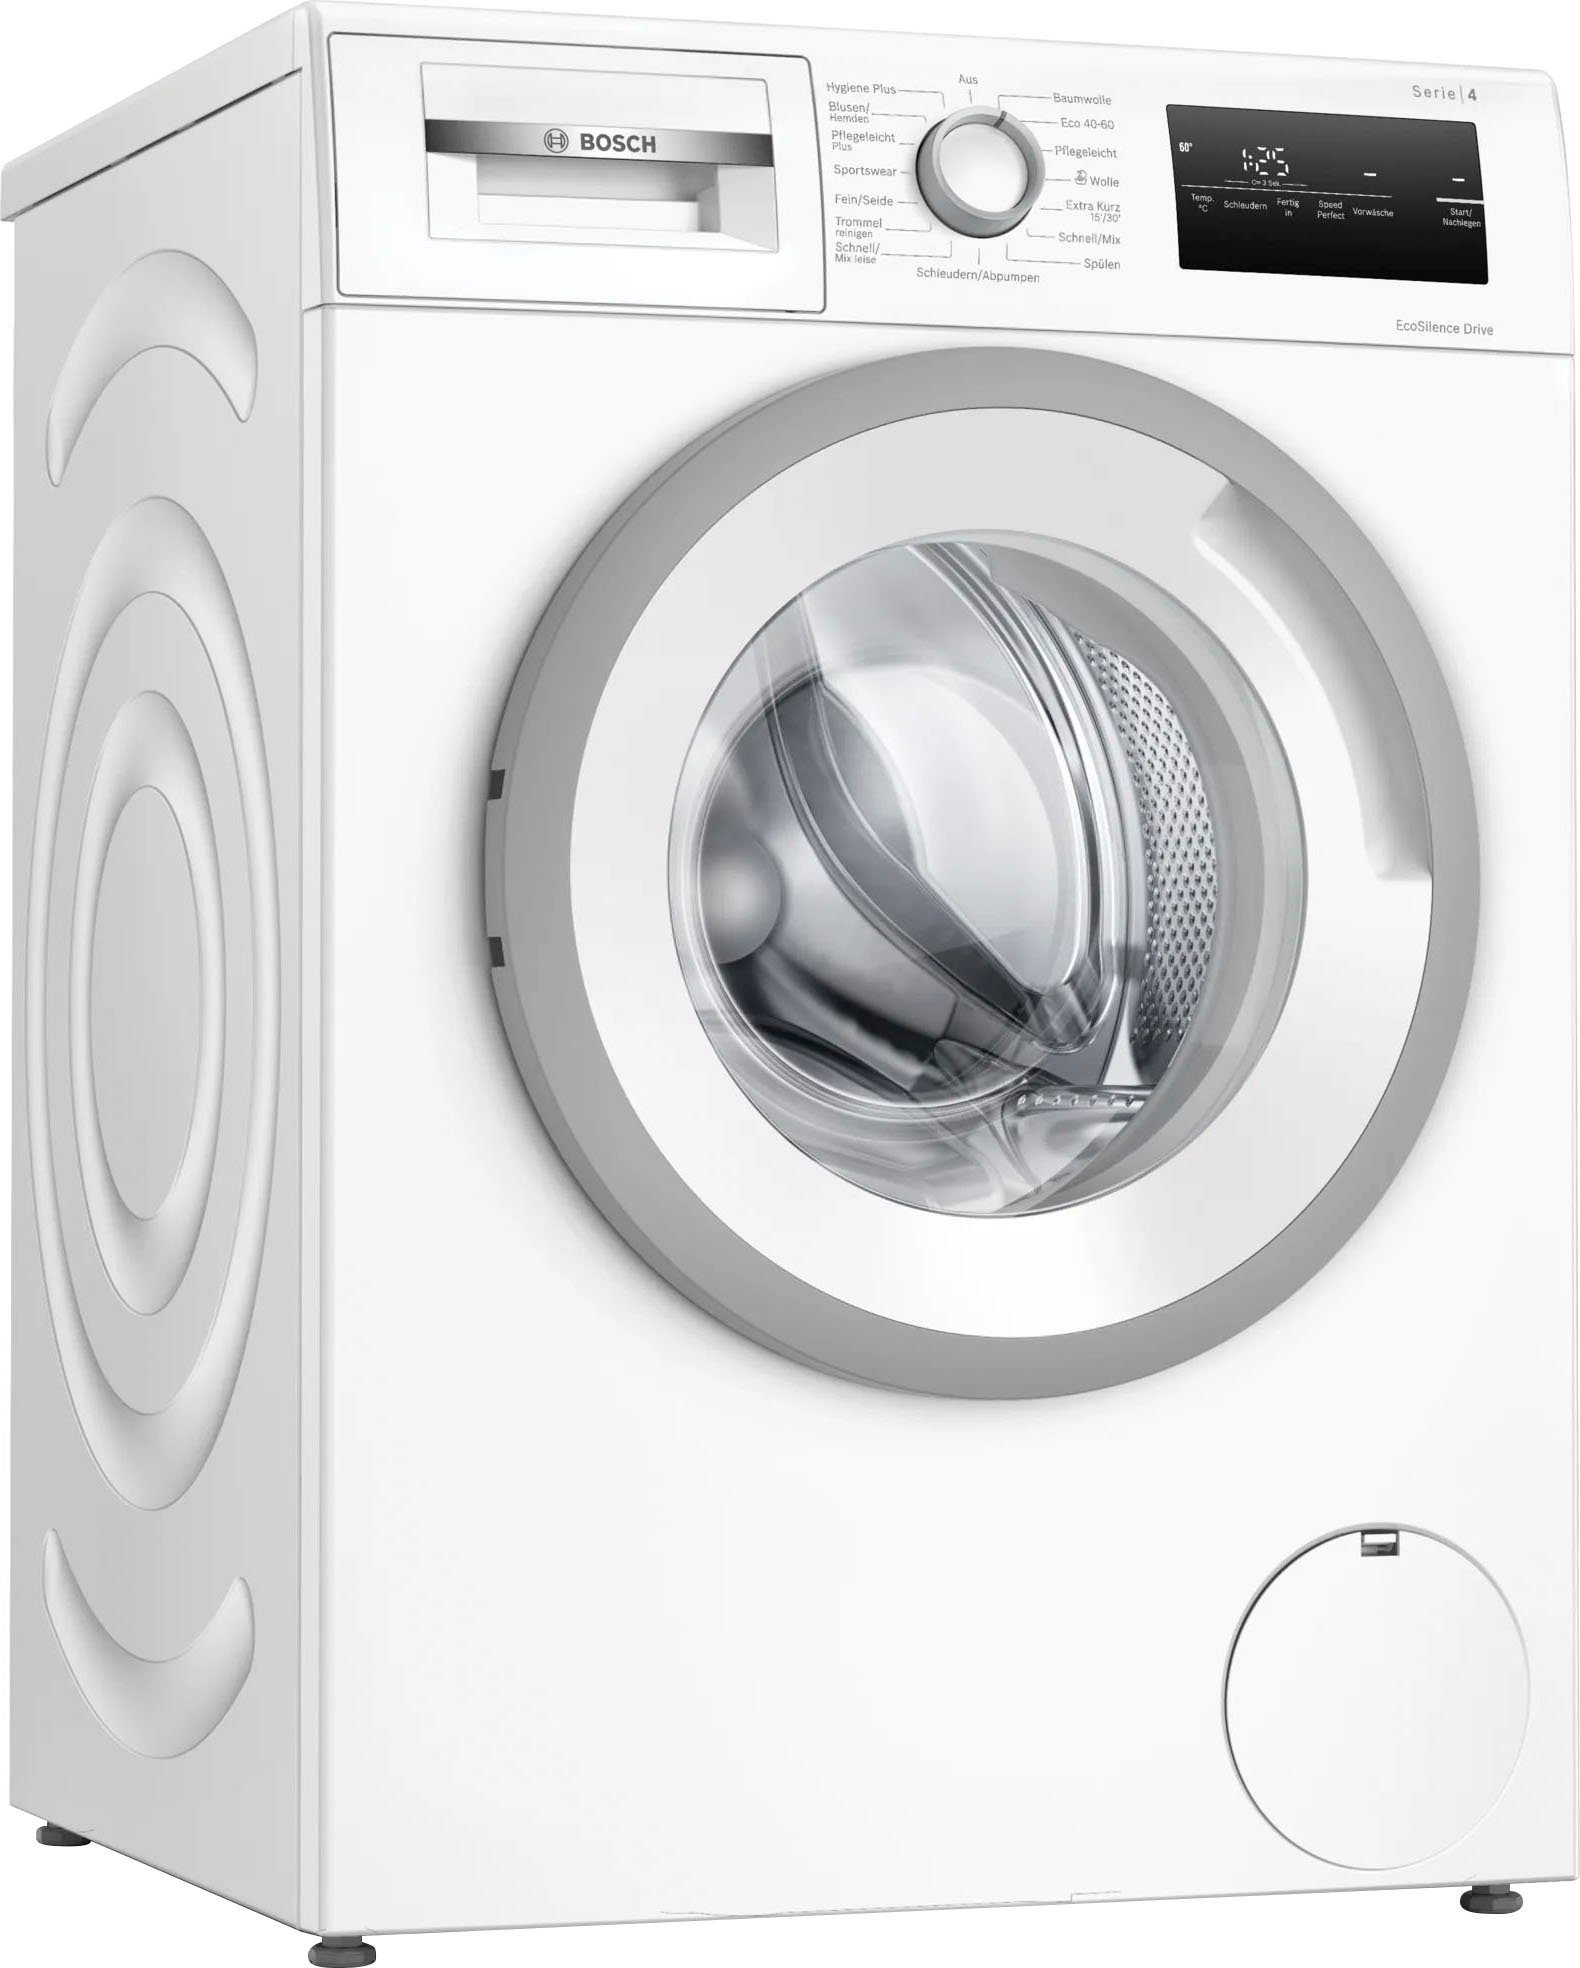 BOSCH Waschmaschine Serie 4 WAN28129, 8 kg, 1400 U/min, Eco Silence Drive™:  so effizient und robust muss ein Waschmaschinenantrieb sein.